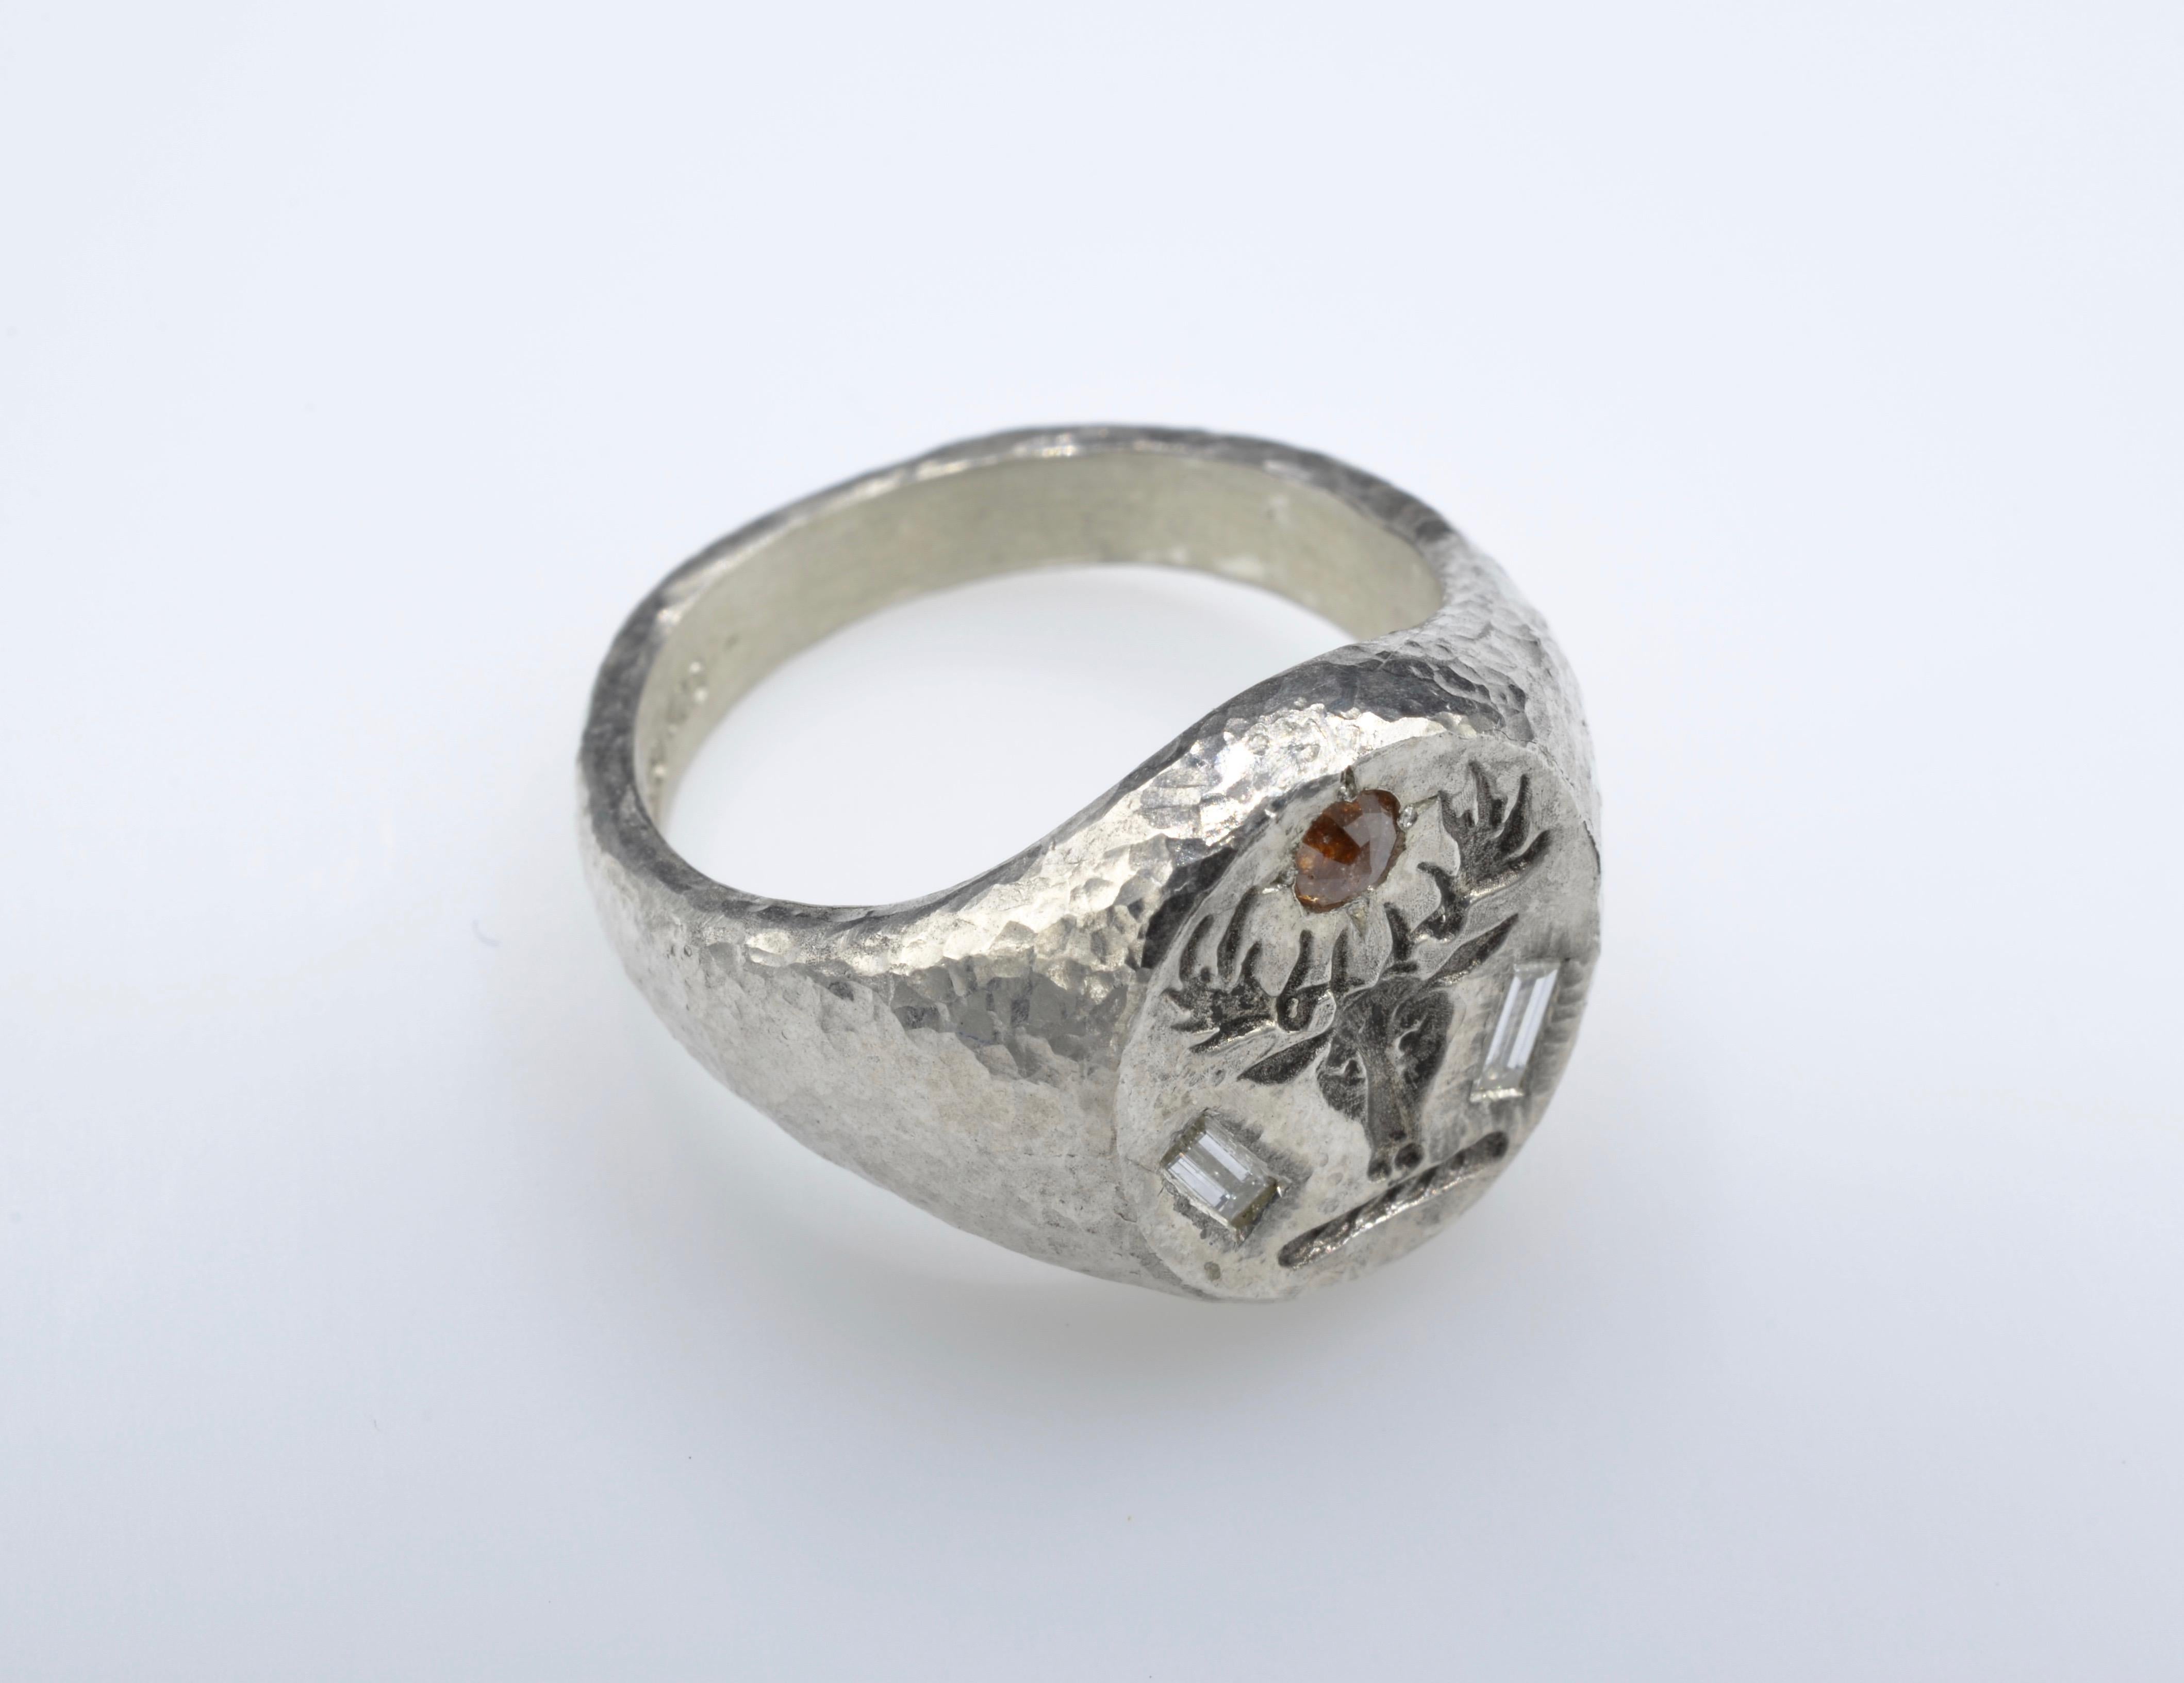 Traditionelle Form eines Siegelrings, mit der Besonderheit der gehämmerten Textur in Silber und mit Diamanten besetzt. Die beiden Baguette-Diamanten von je 0,10 Karat an der Seite des Hirschkopfes verleihen dem Ring einen modernen Look. Das Oberteil